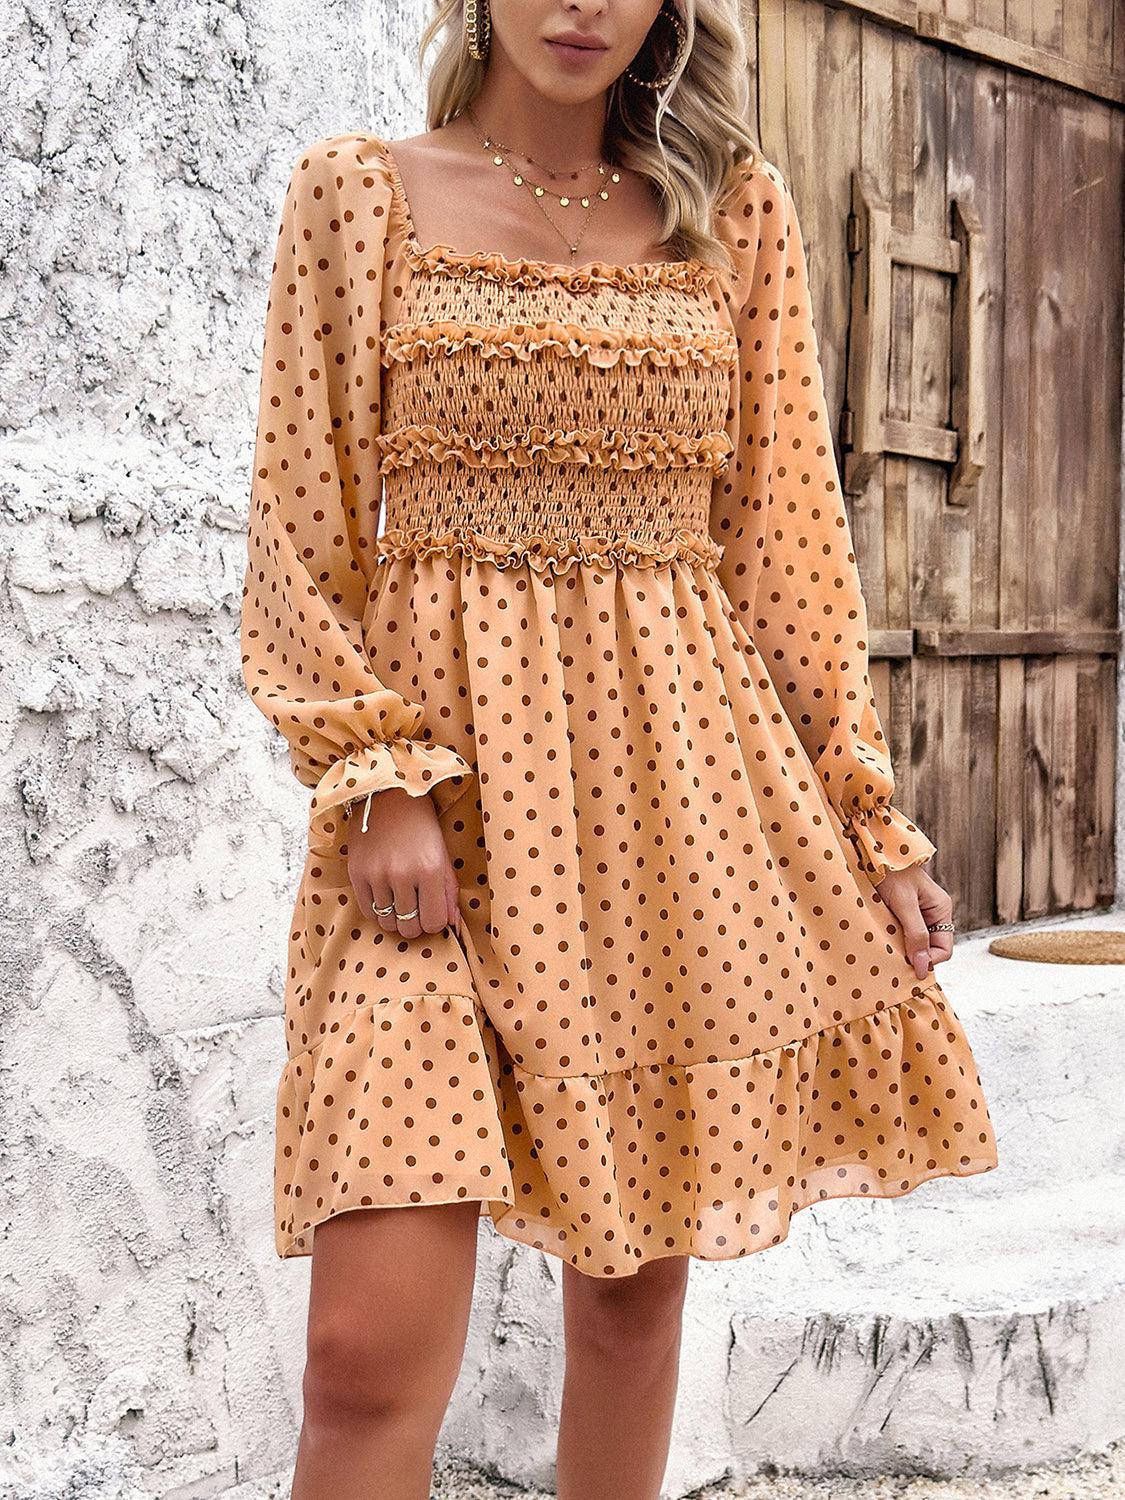 a woman wearing a polka dot dress